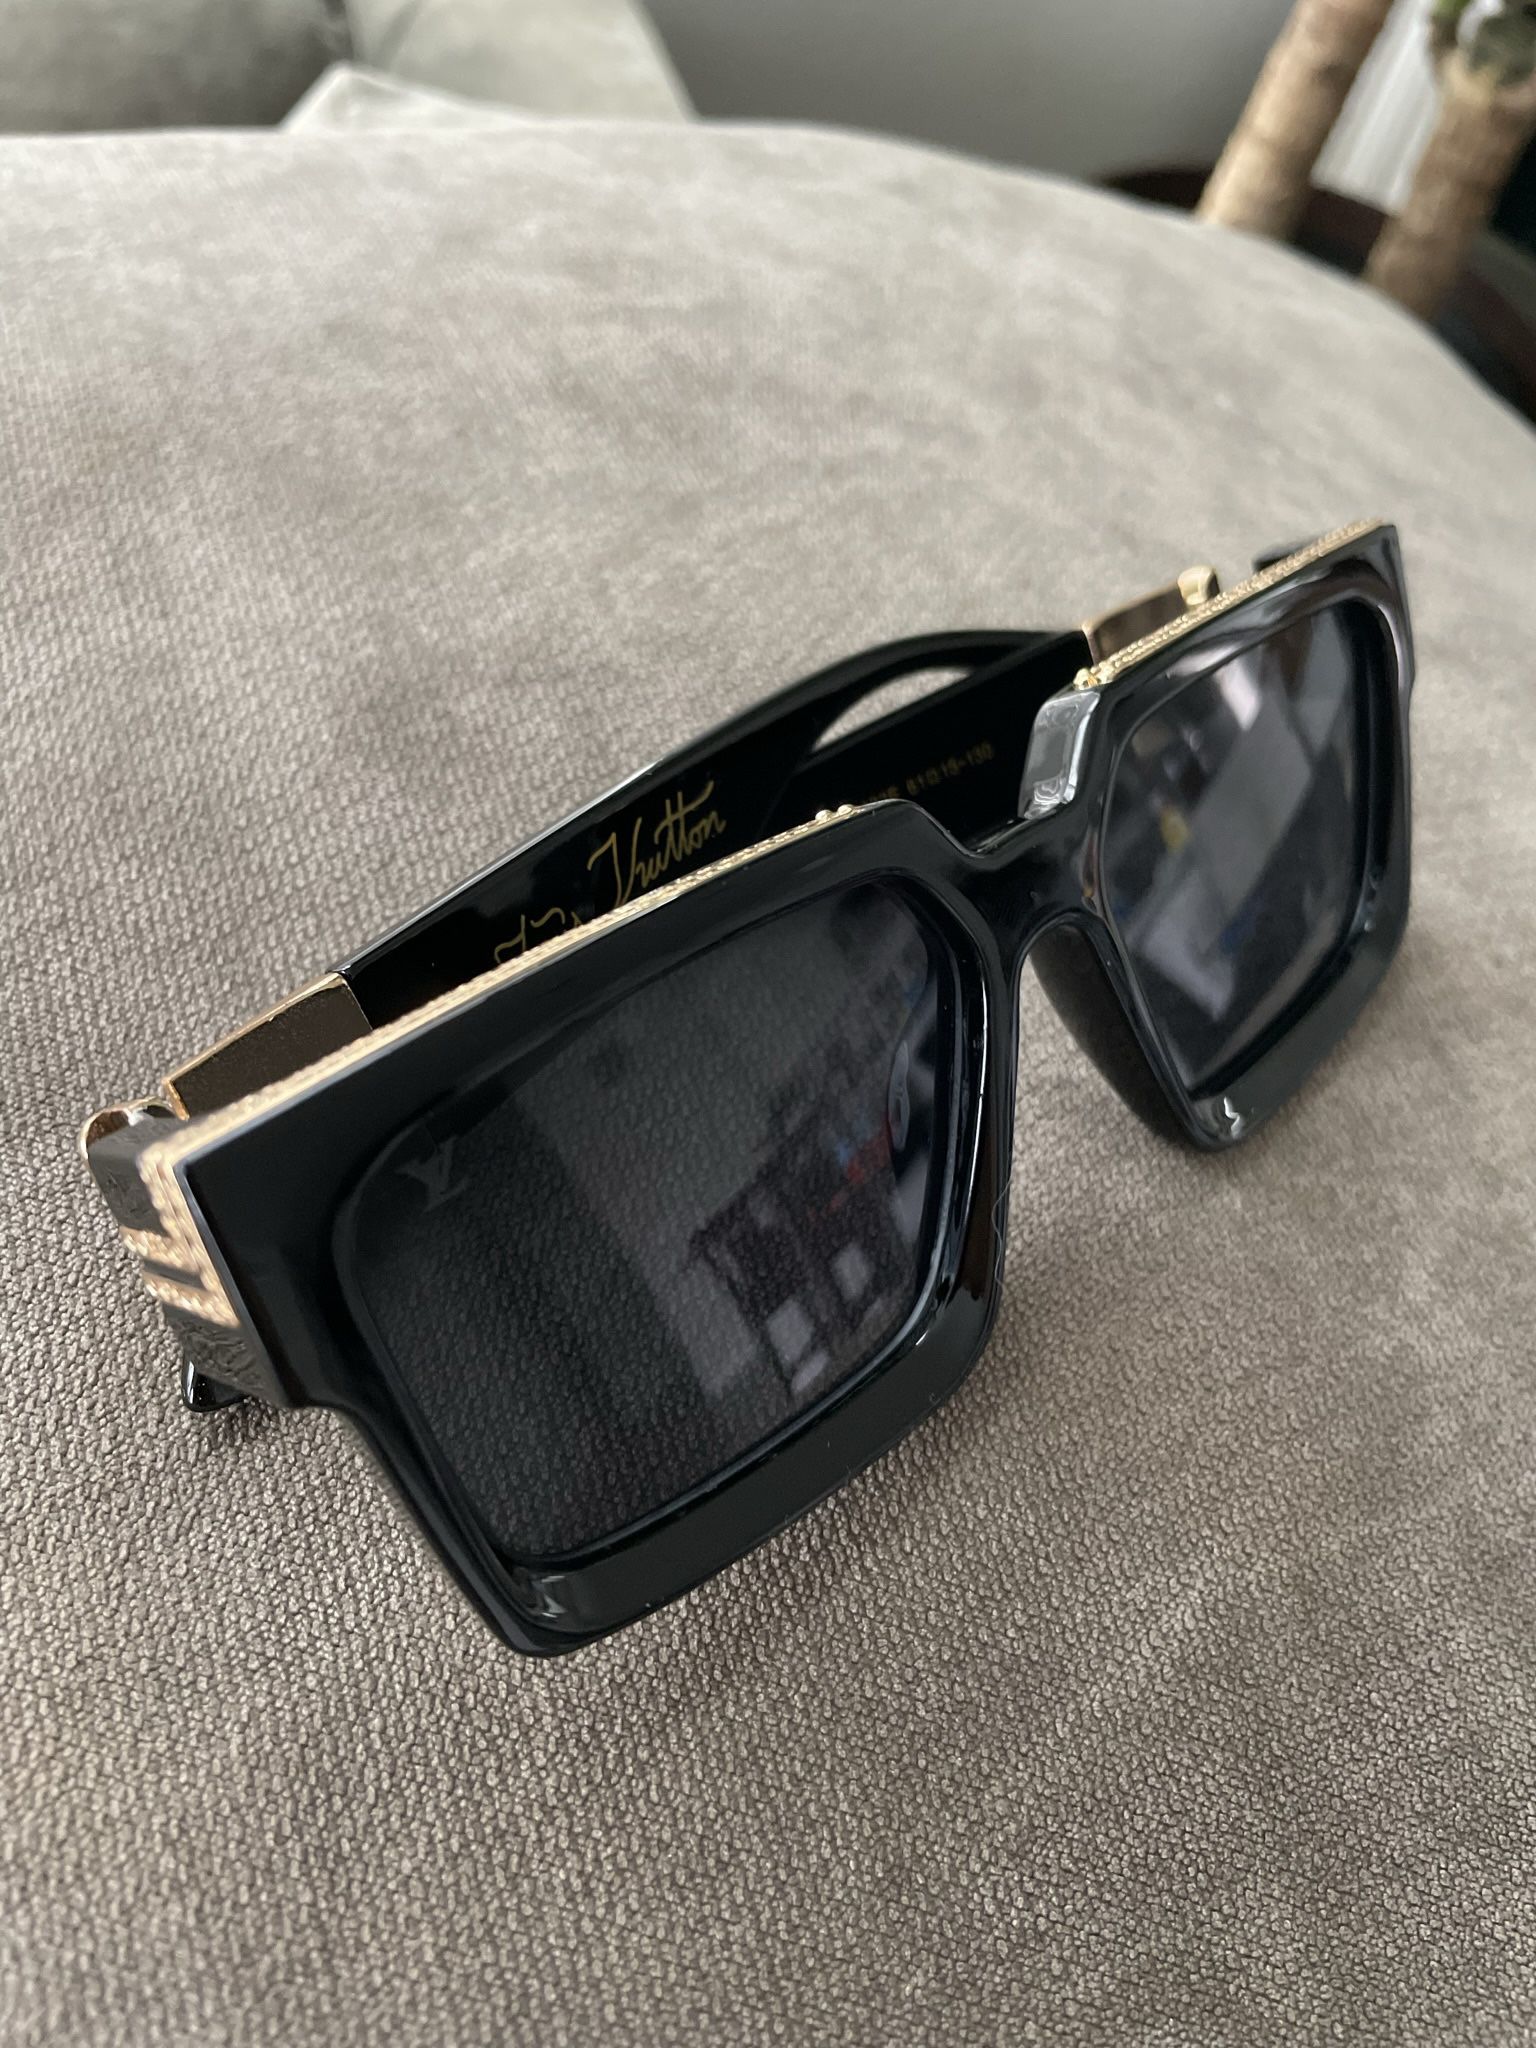 Fake Lv Millionaire Sunglasses